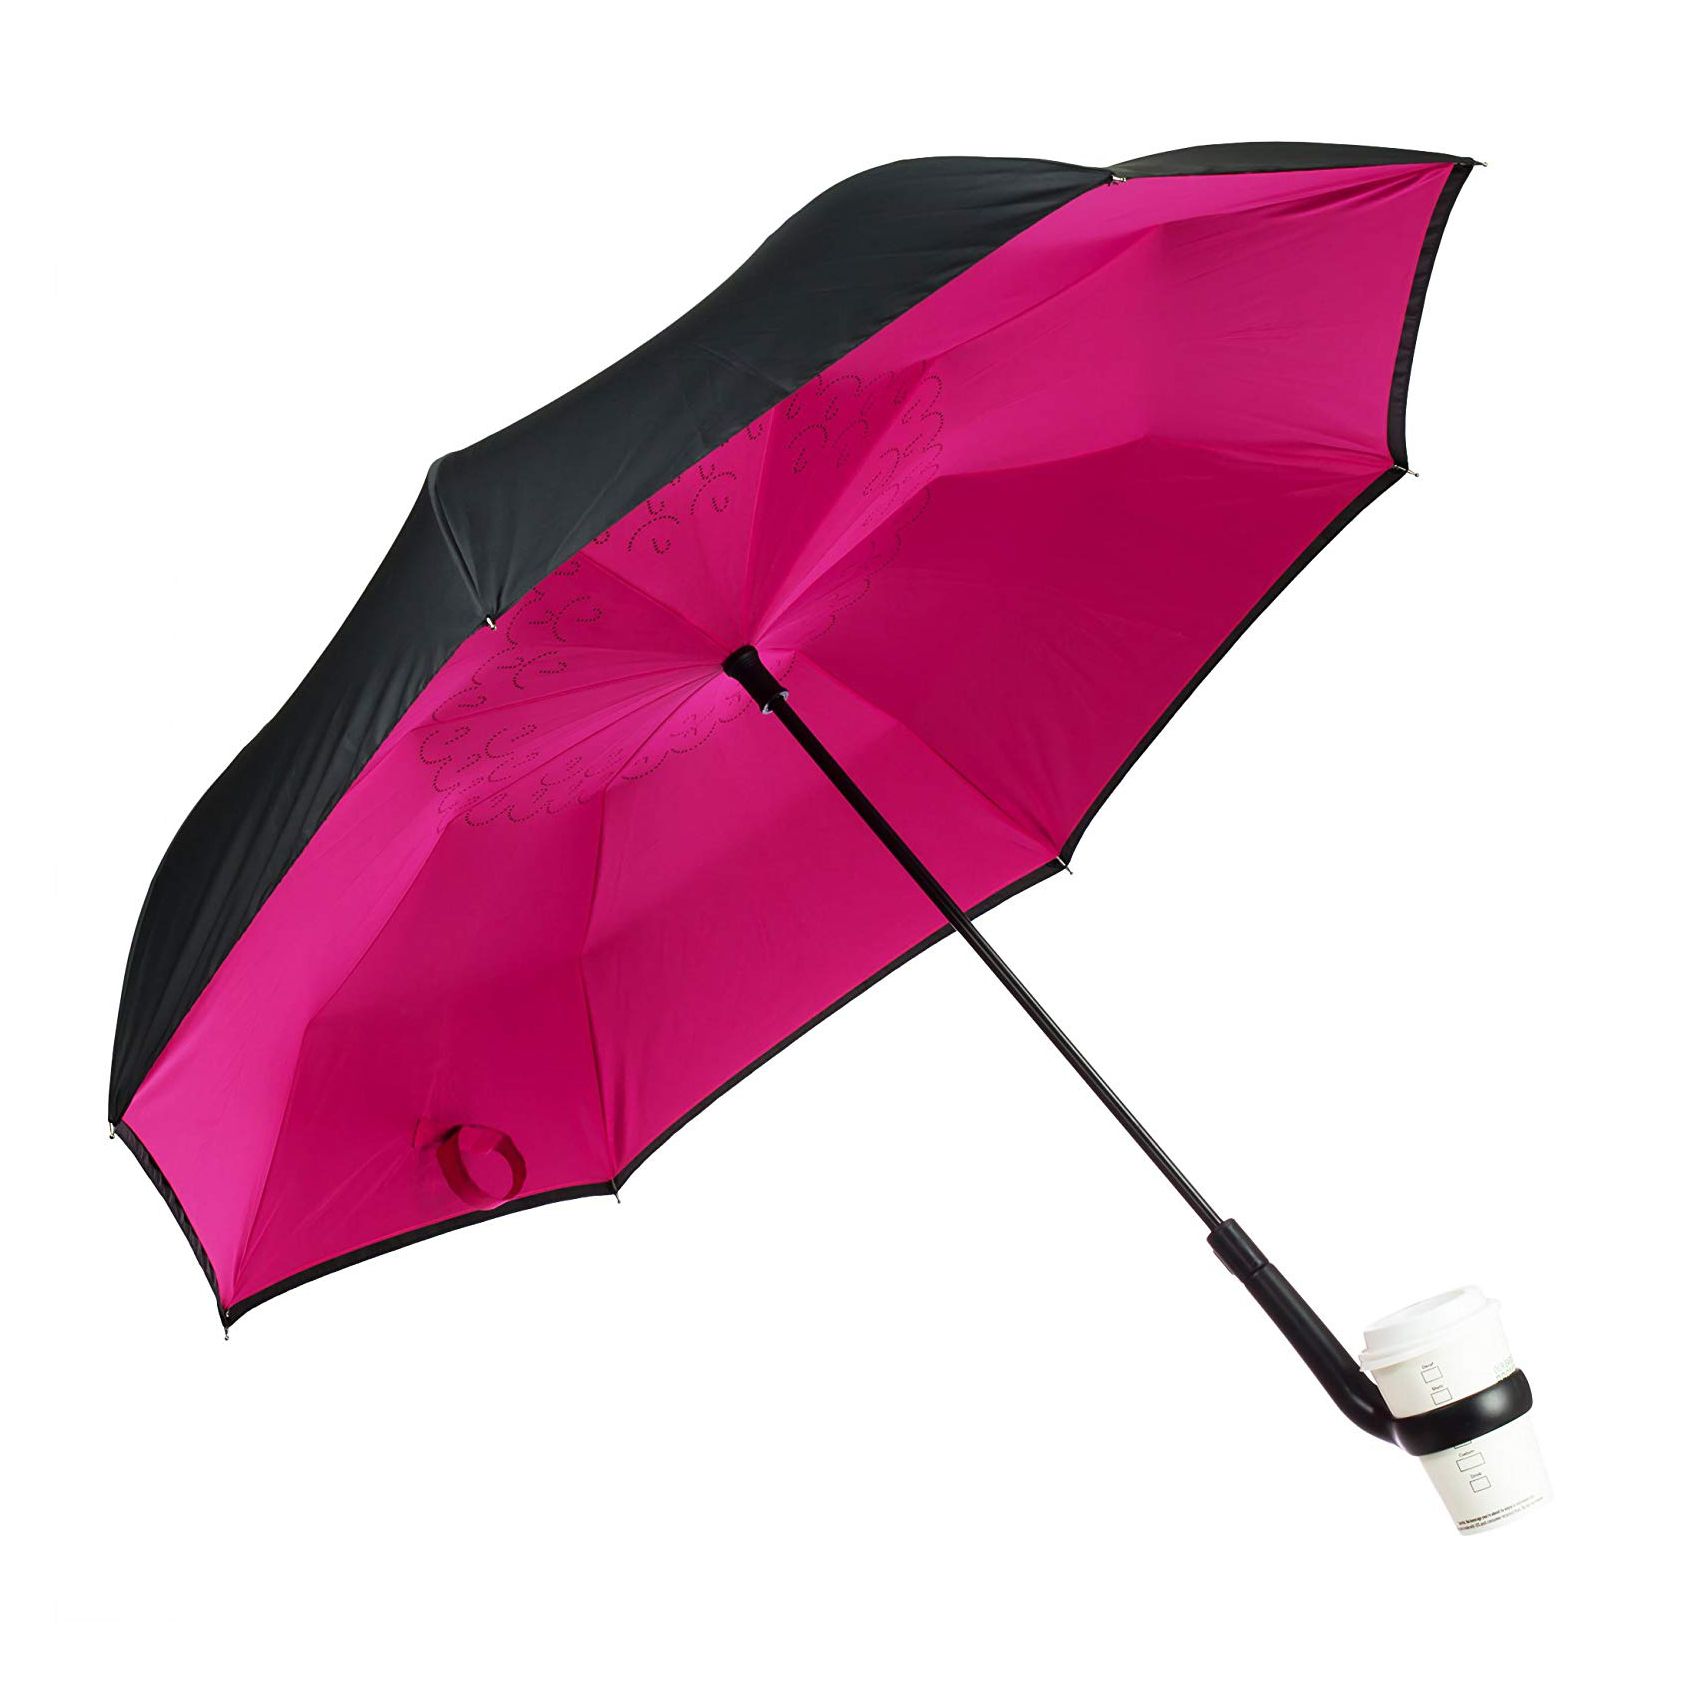 Ovaj reverzibilni kišobran drži moju šalicu za kavu i olakšava kišna jutra